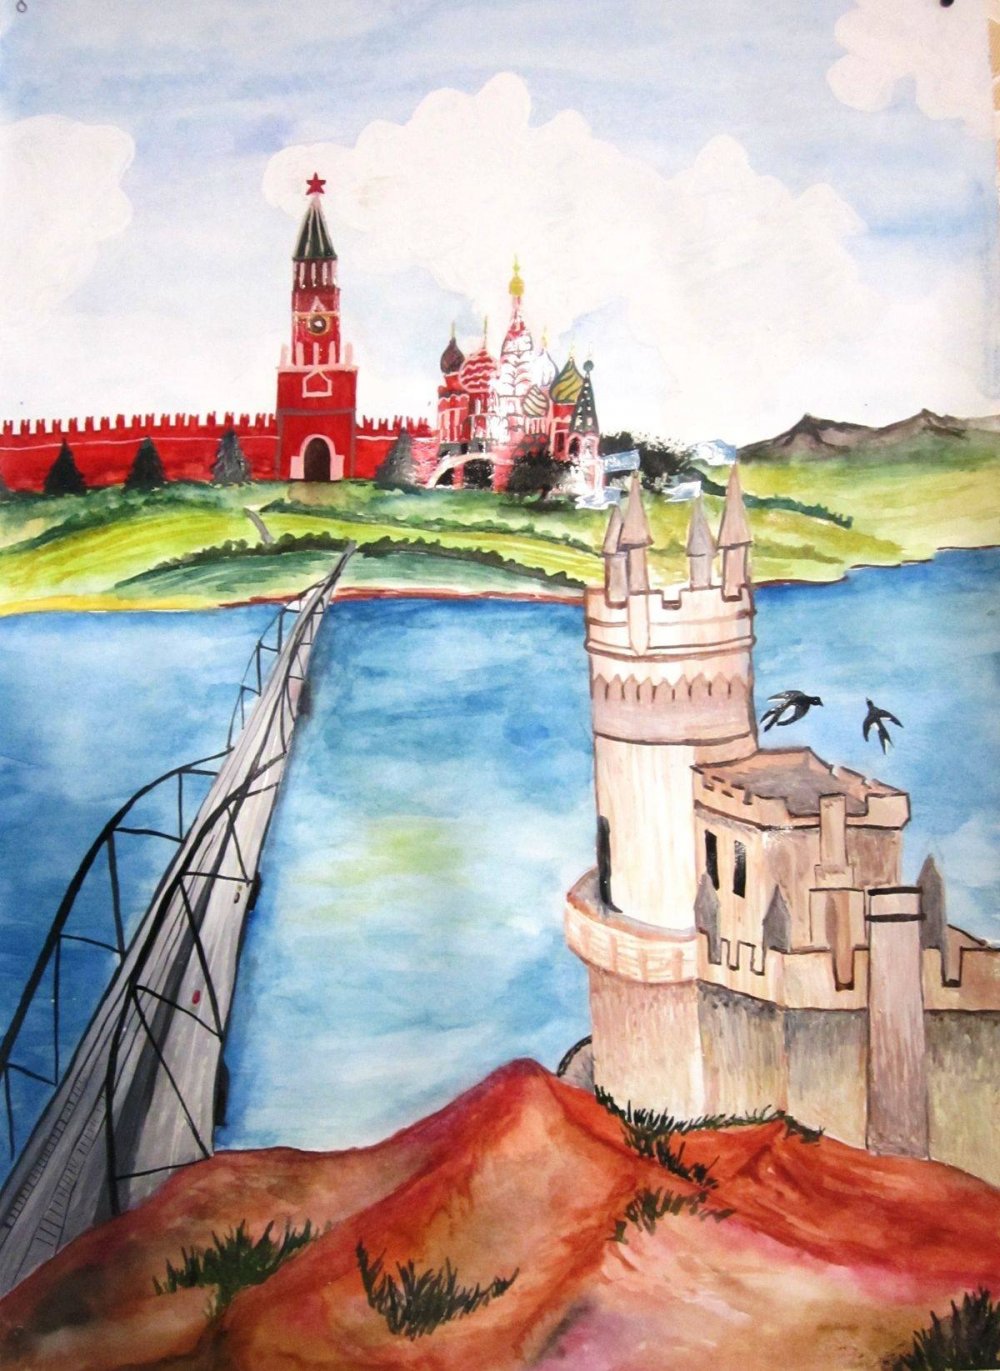 Рисунок на тему Крым и Россия